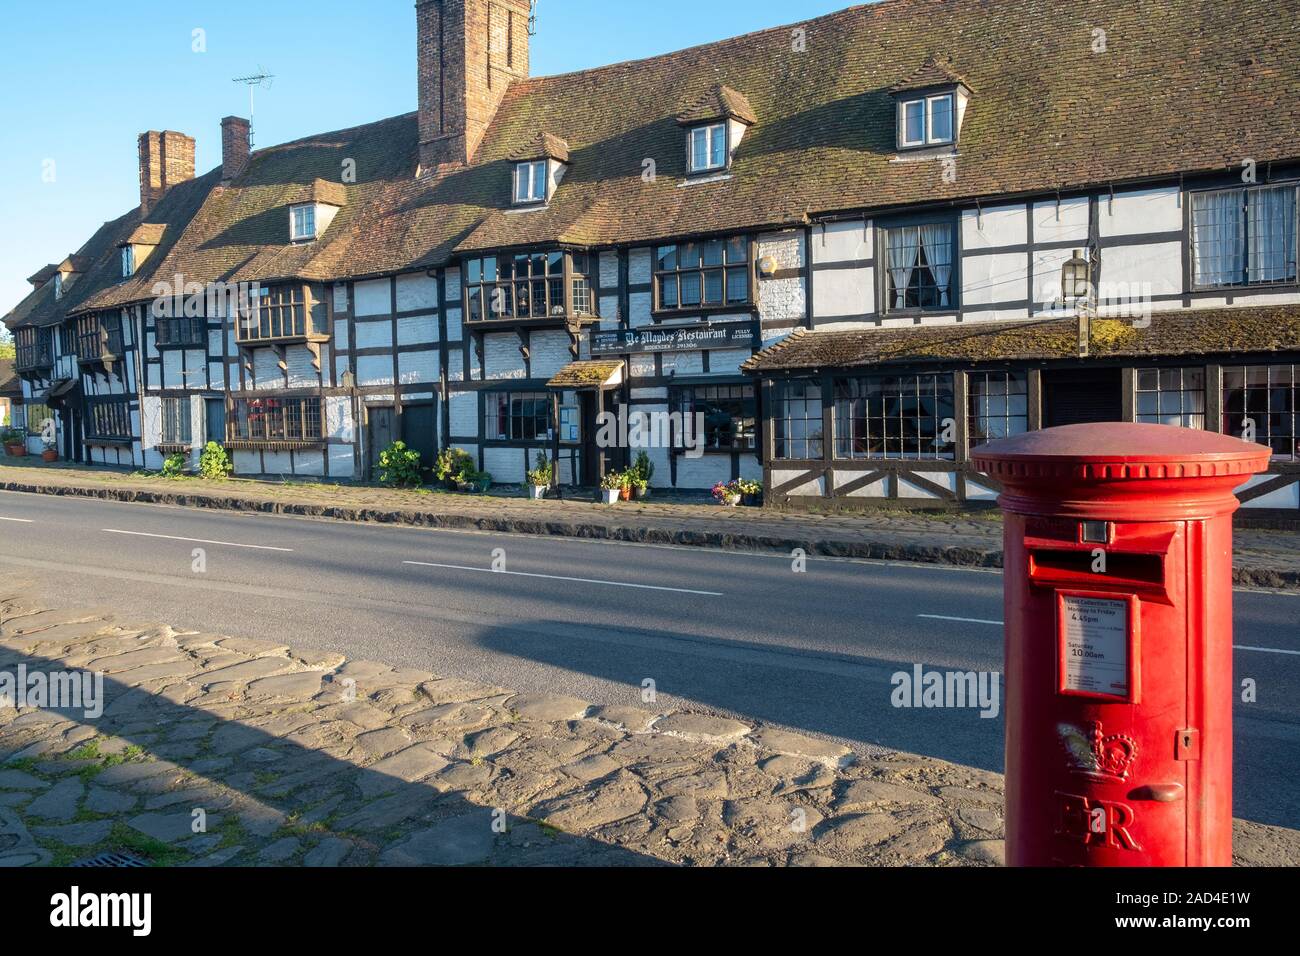 Medieval weavers' houses in picturesque Biddenden, Kent, UK Stock Photo